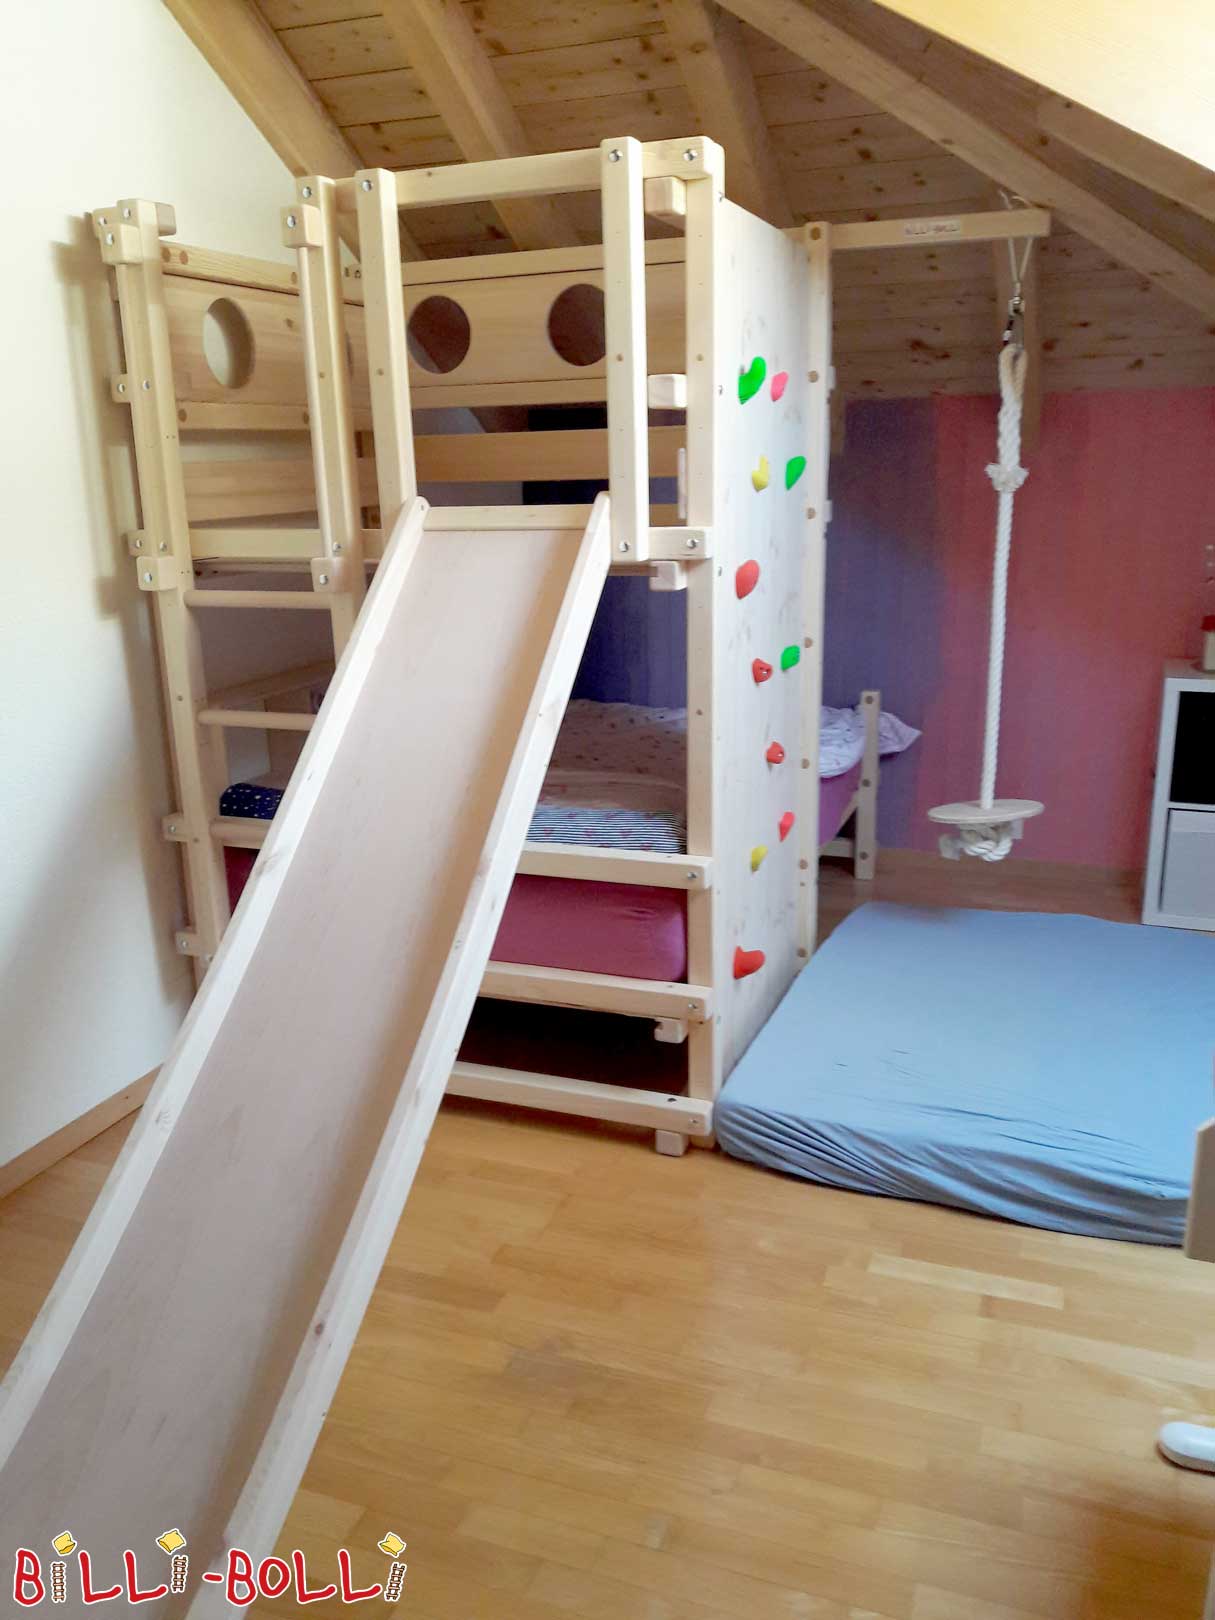 Dachschrägen­bett: Das geniale Kinder-Spielbett für die Dachschräge